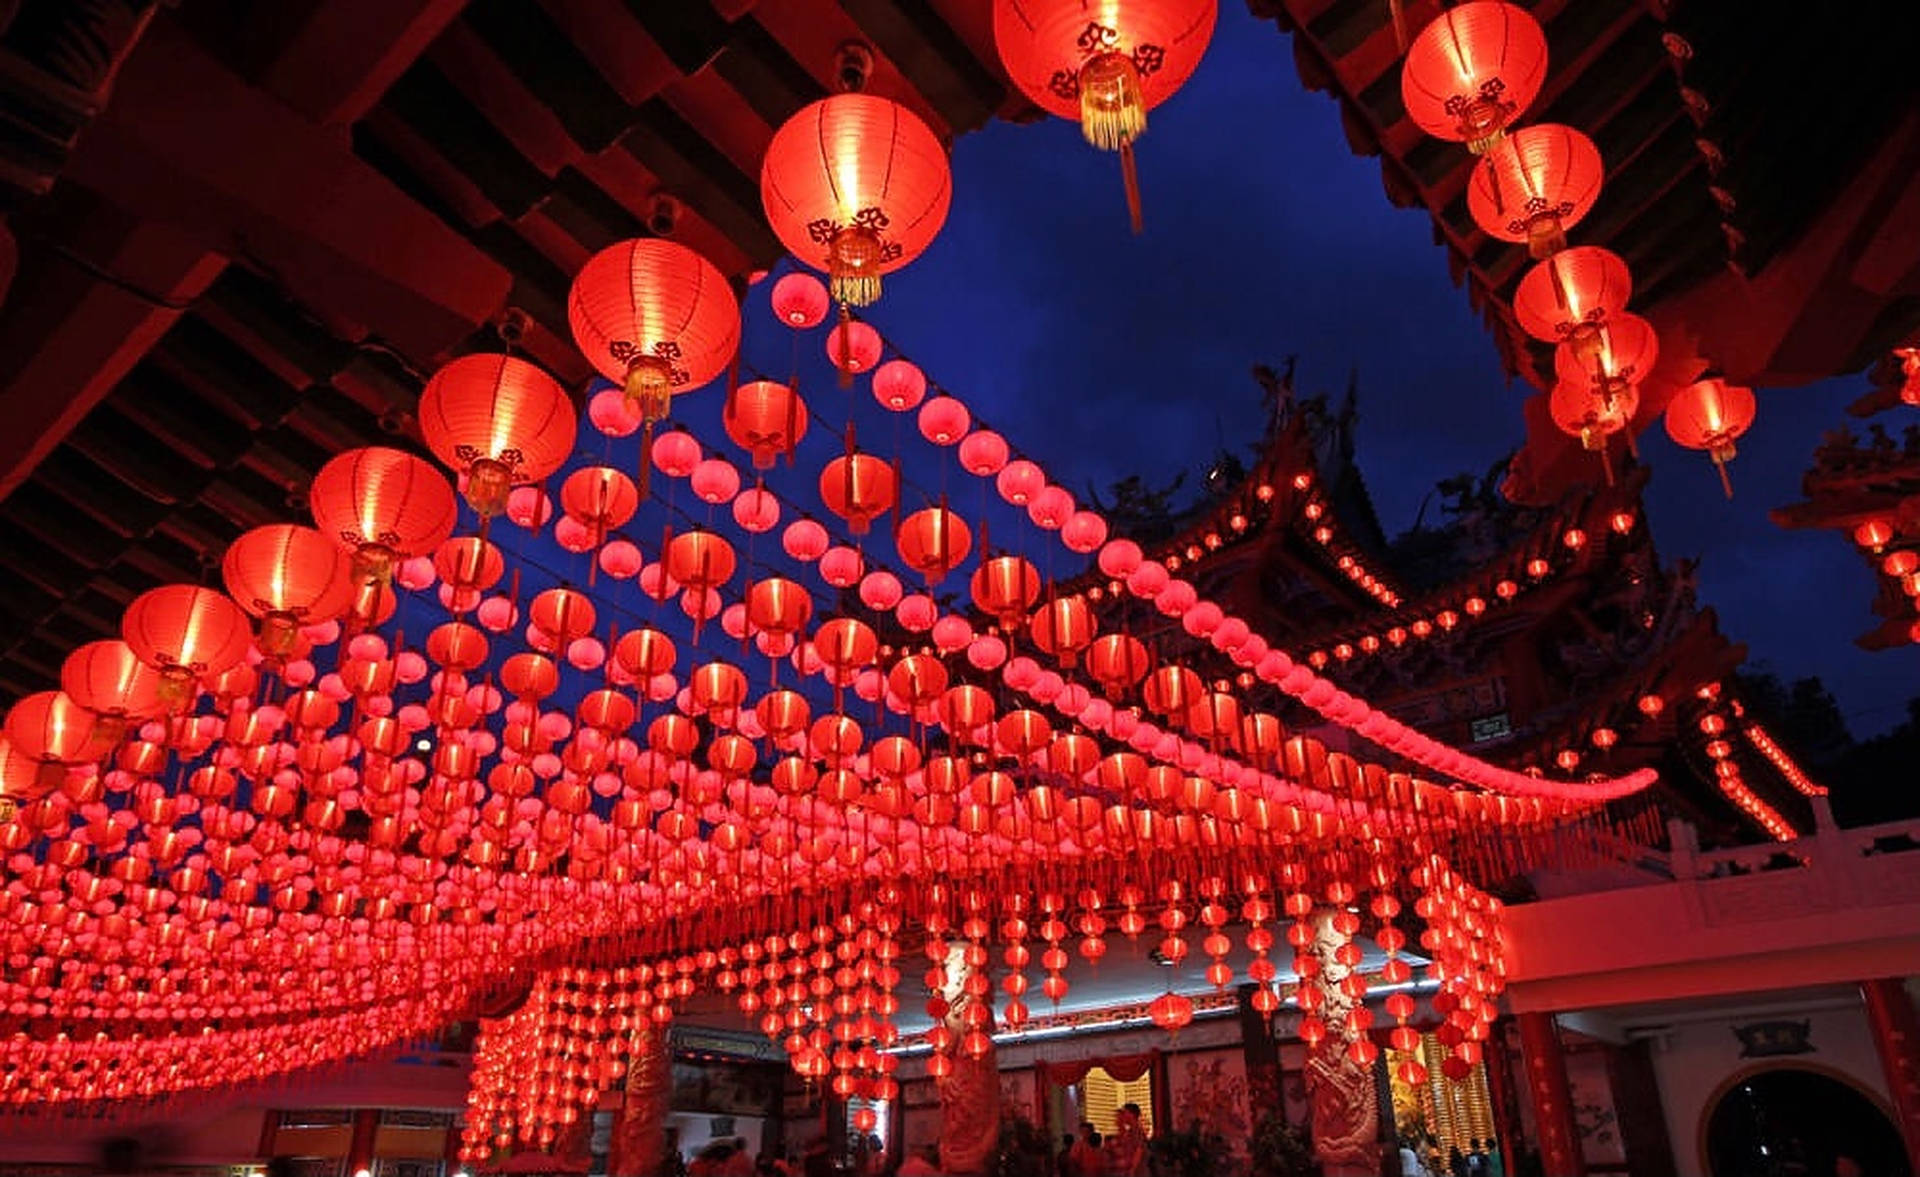 Kuala Lumpur With Lanterns